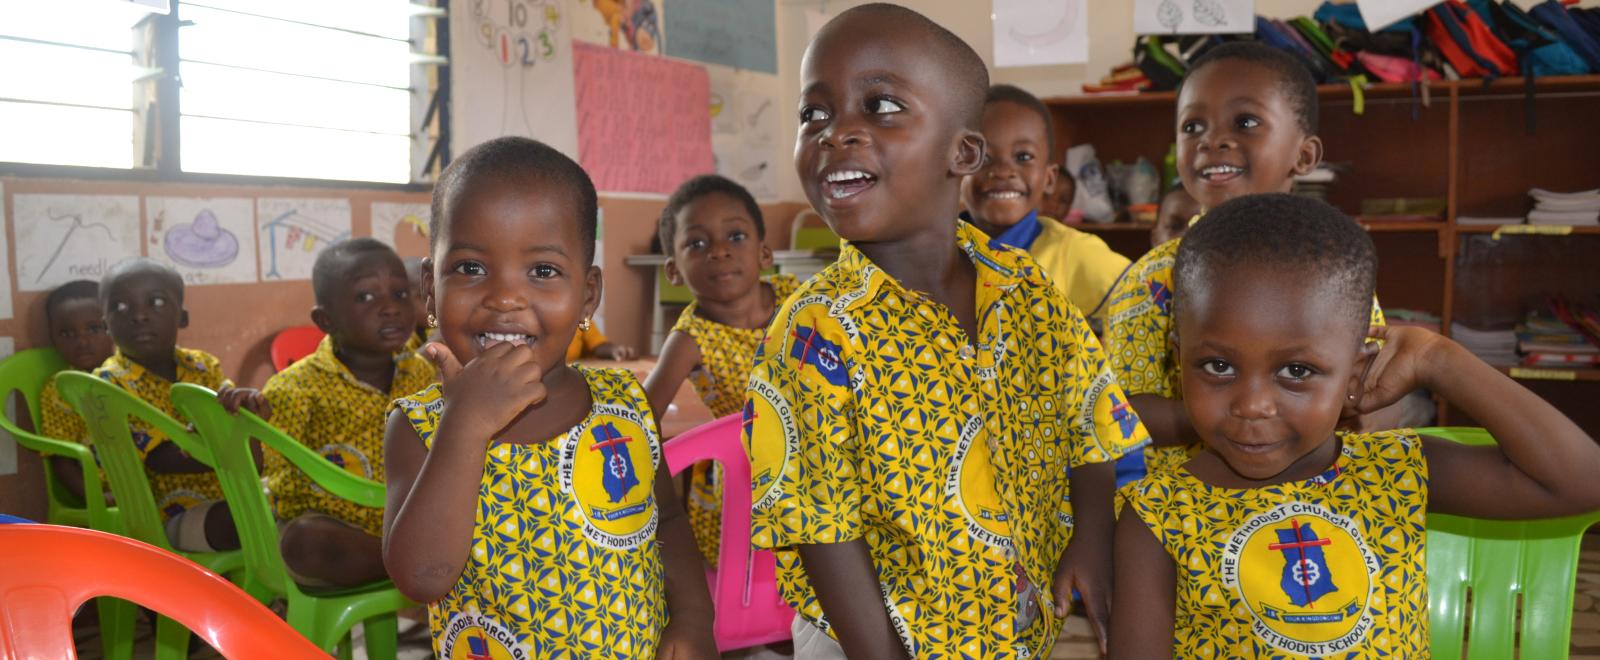 Volunteer with children in Ghana